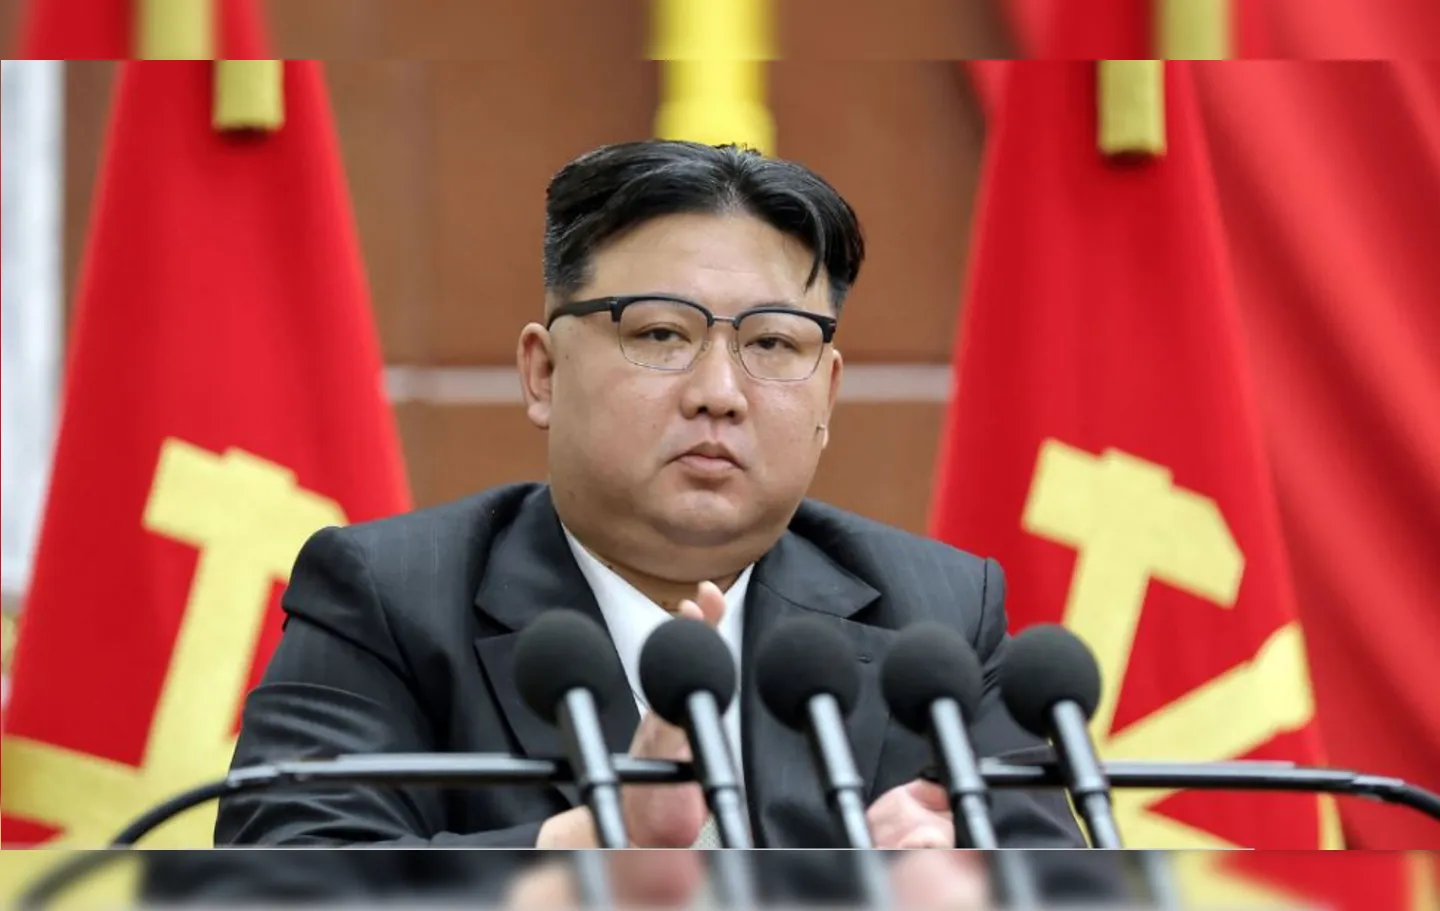 Líder norte-coreano Kim Jong-un